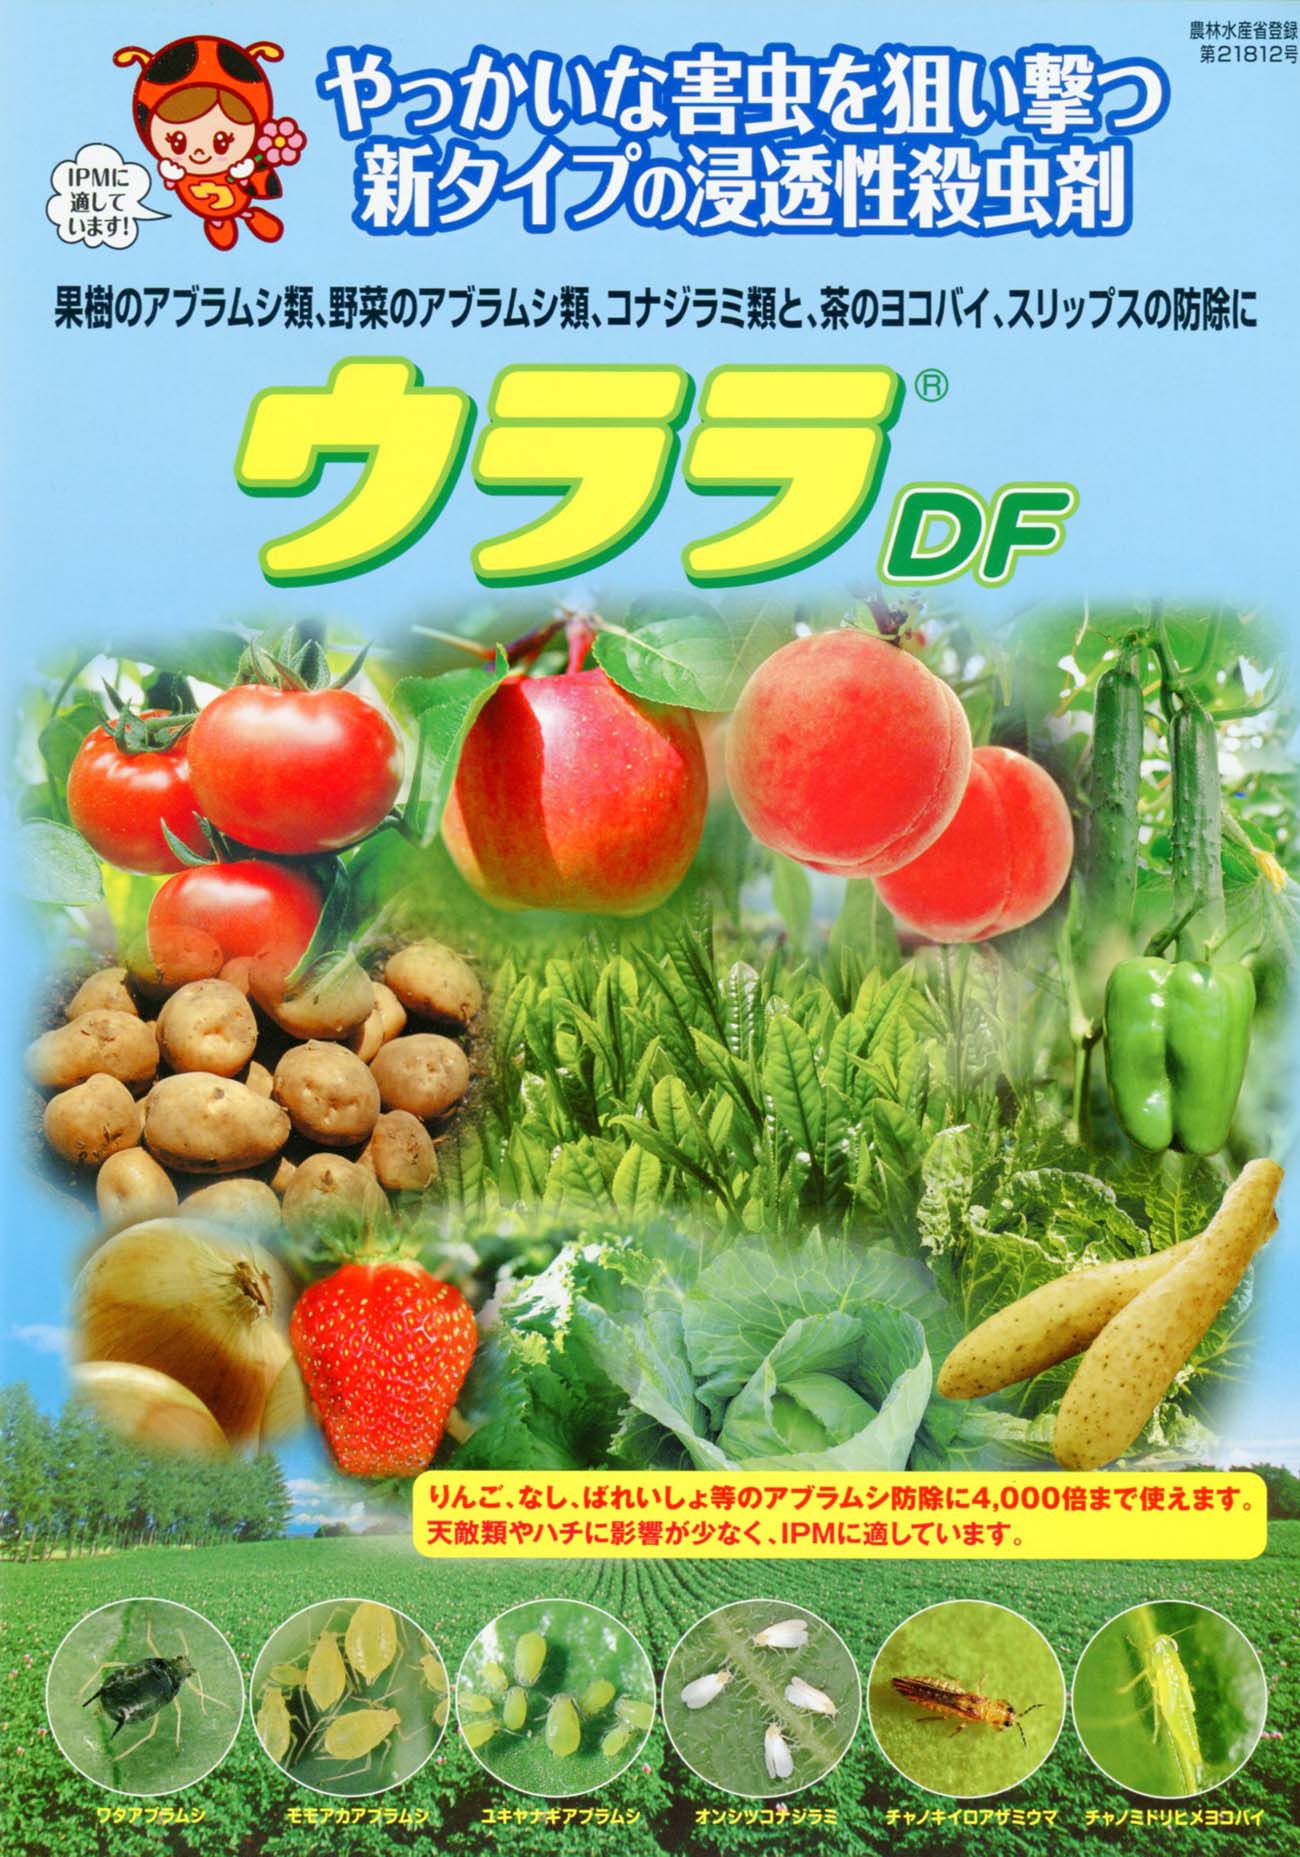 ウララDF[殺虫剤] - e-種や｜国内最大級の野菜種・花種・苗・農業資材の販売店